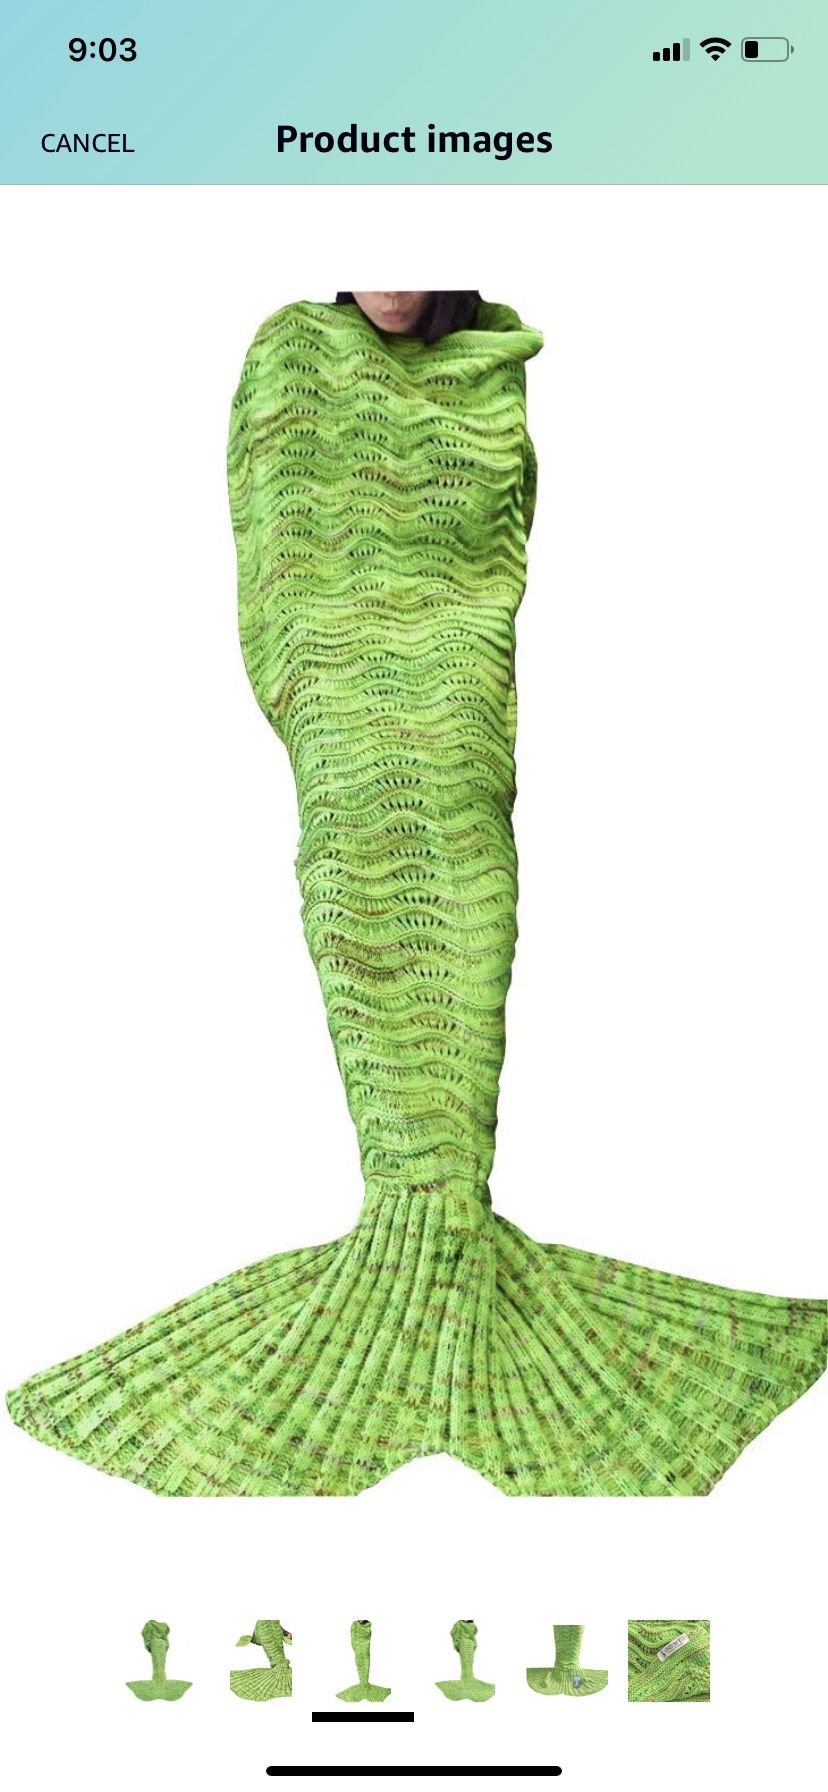 Adult Mermaid Tail Blanket 